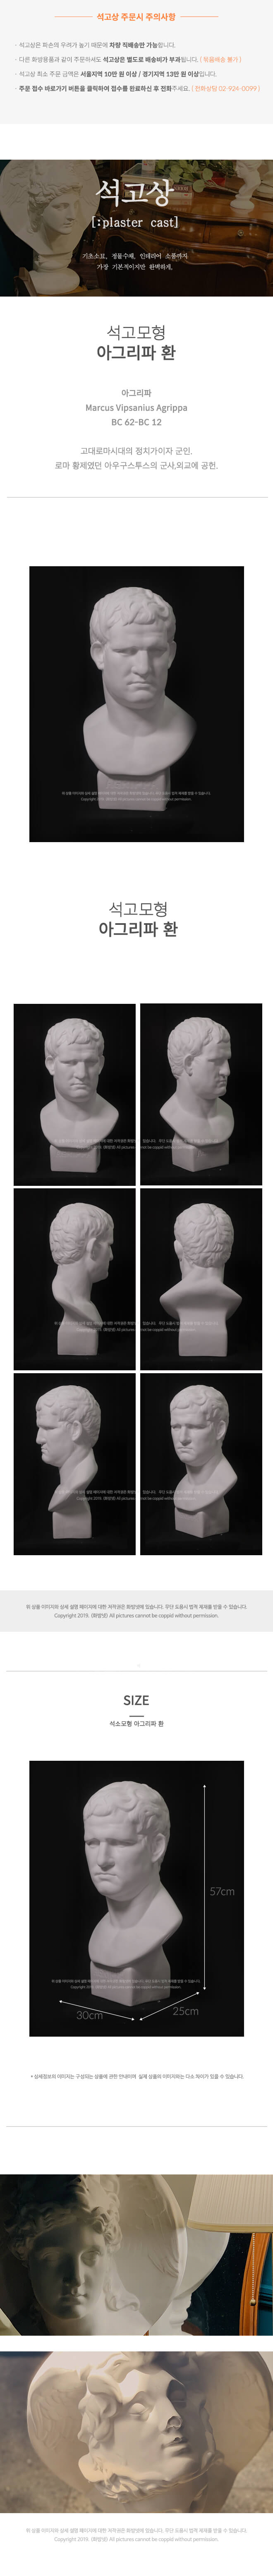 아그리파 환 30 x 57 cm 석고모형 , 석고상, 조각상, 인테리어 소품